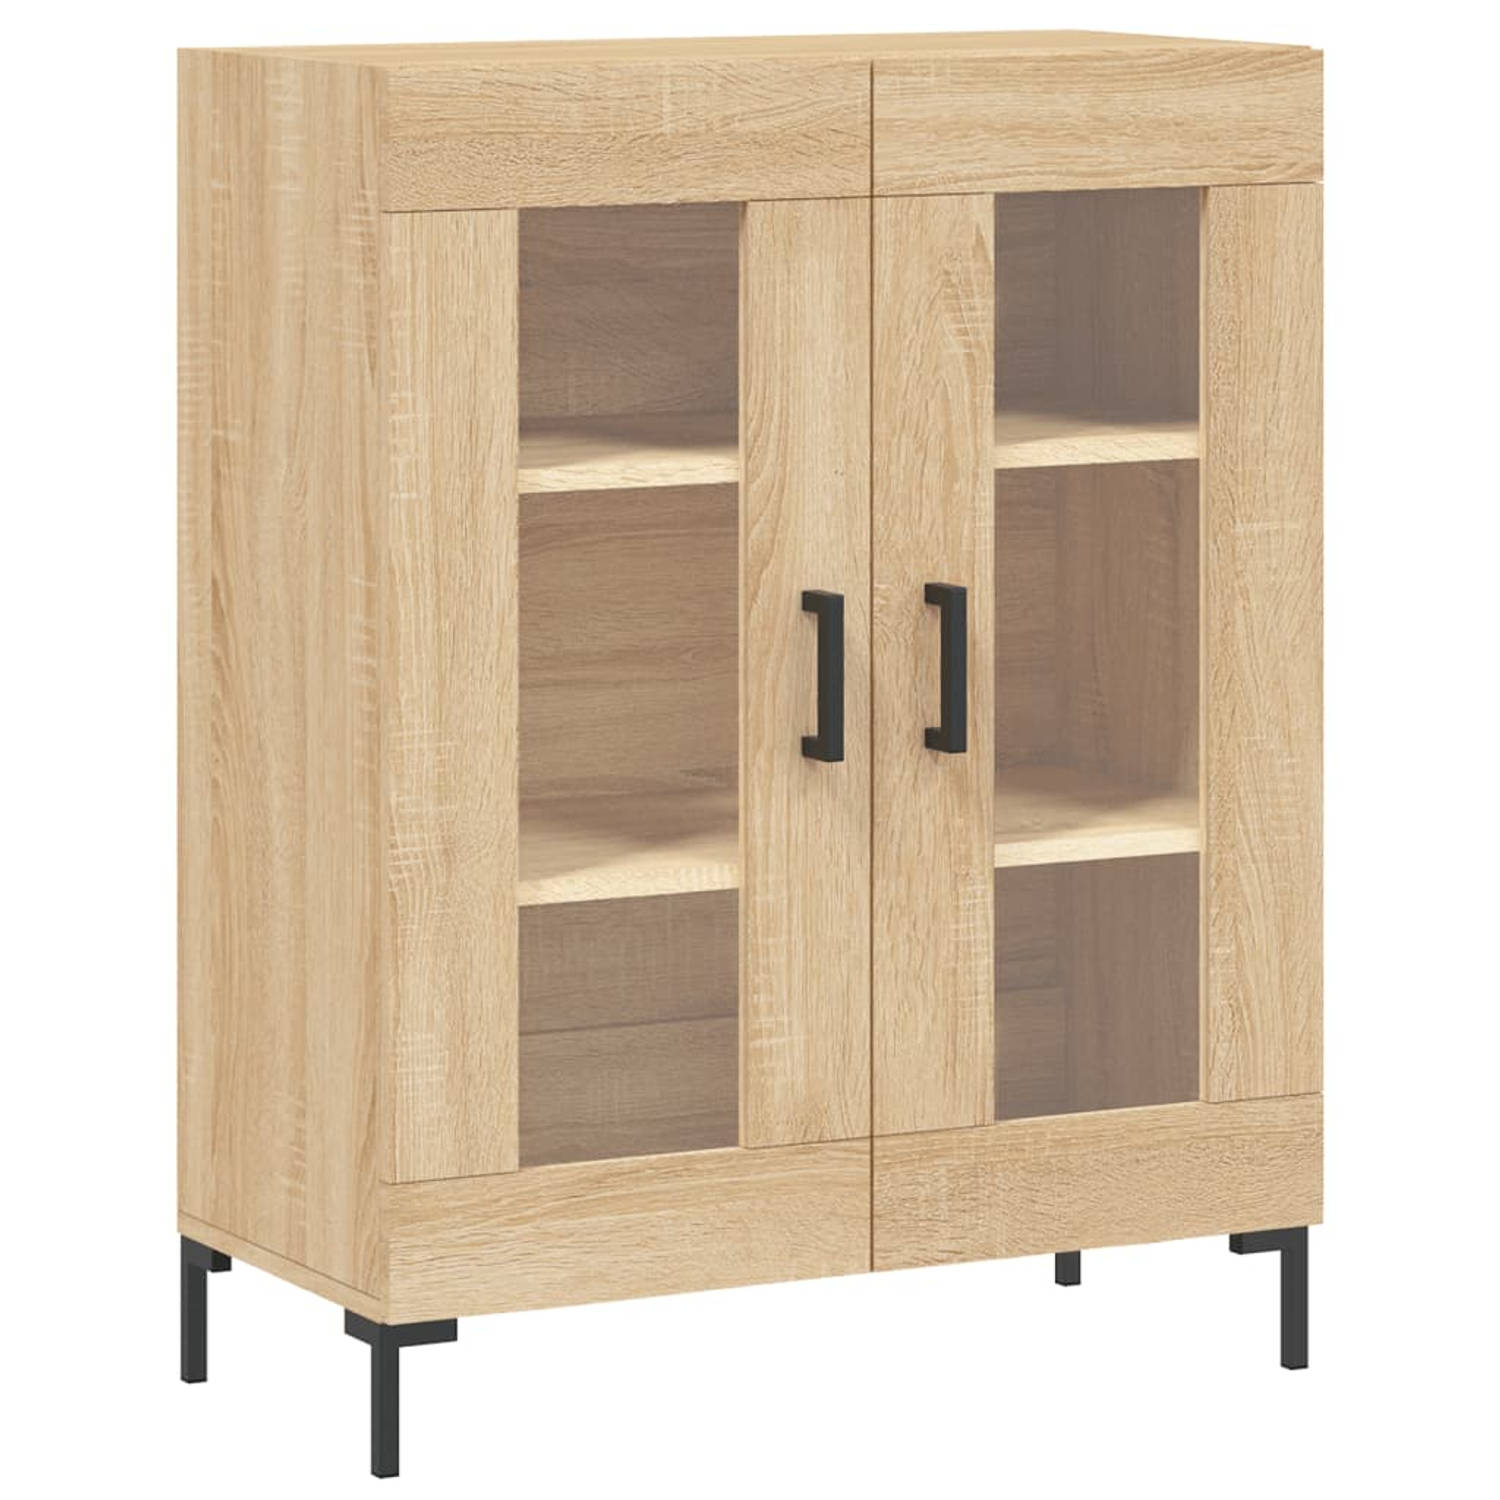 The Living Store Dressoir Bruin - Meubelen - 69.5 x 34 x 90 cm - Duurzaam houten design